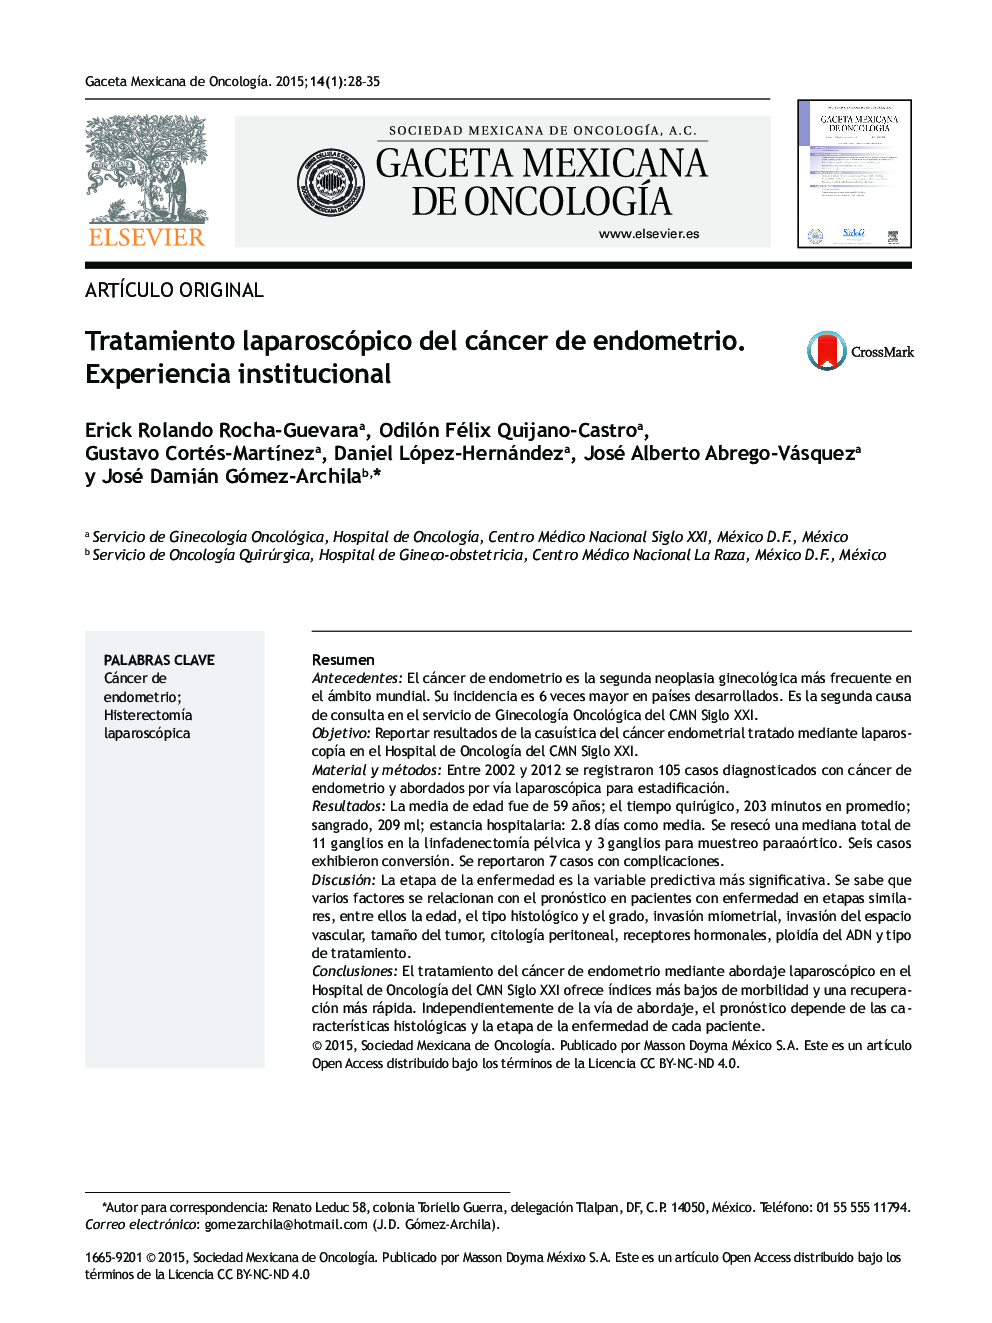 Tratamiento laparoscópico del cáncer de endometrio. Experiencia institucional